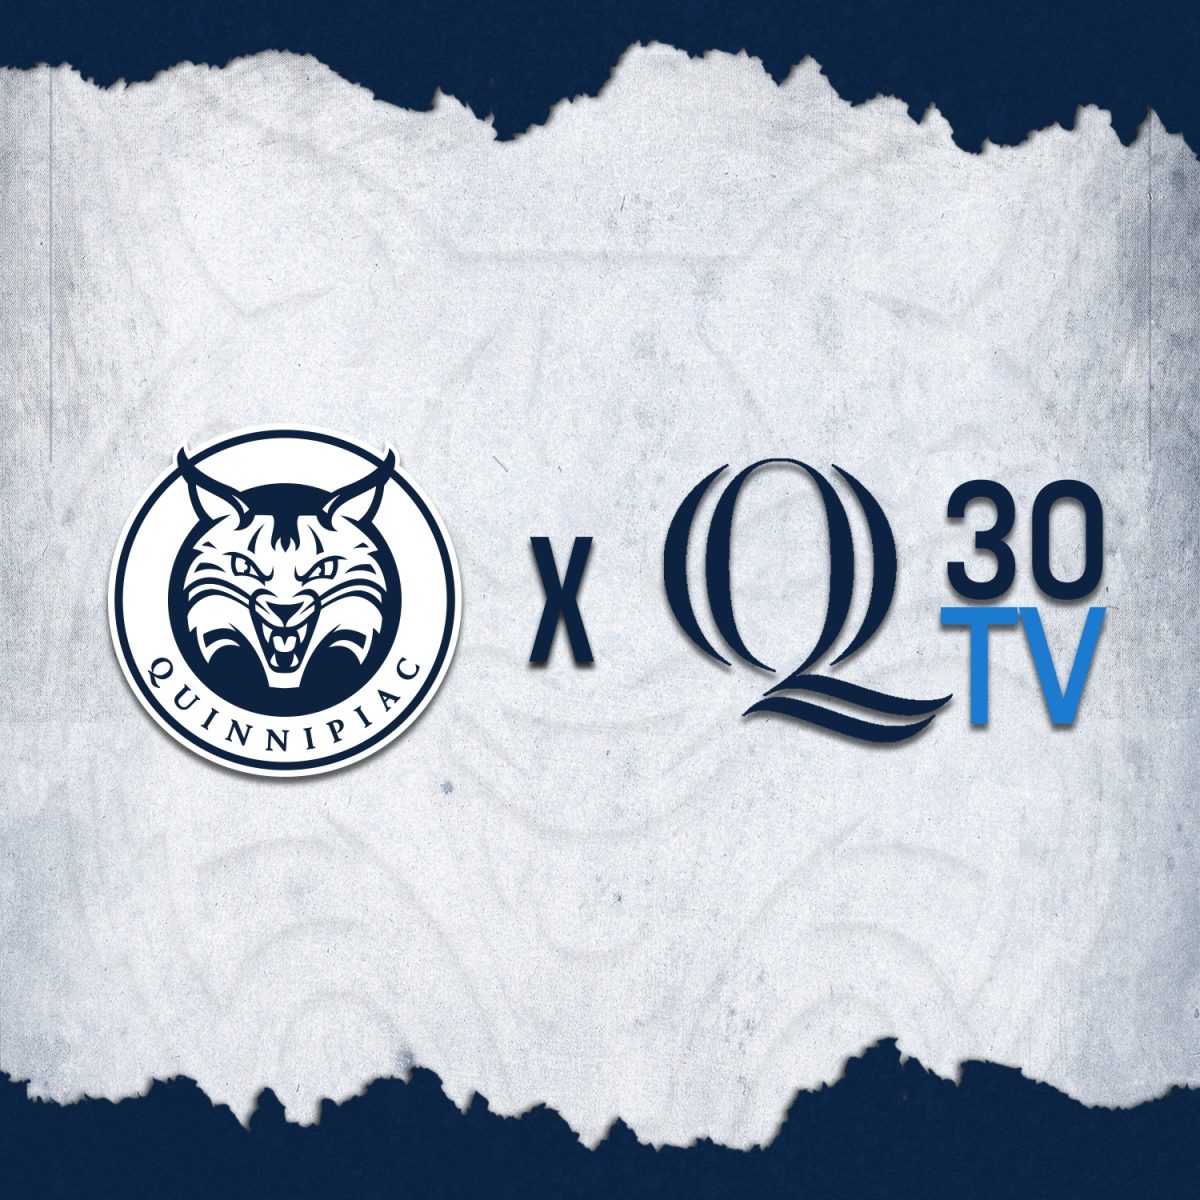 Q30+Television+announces+new+partnership+with+Quinnipiac+Athletics